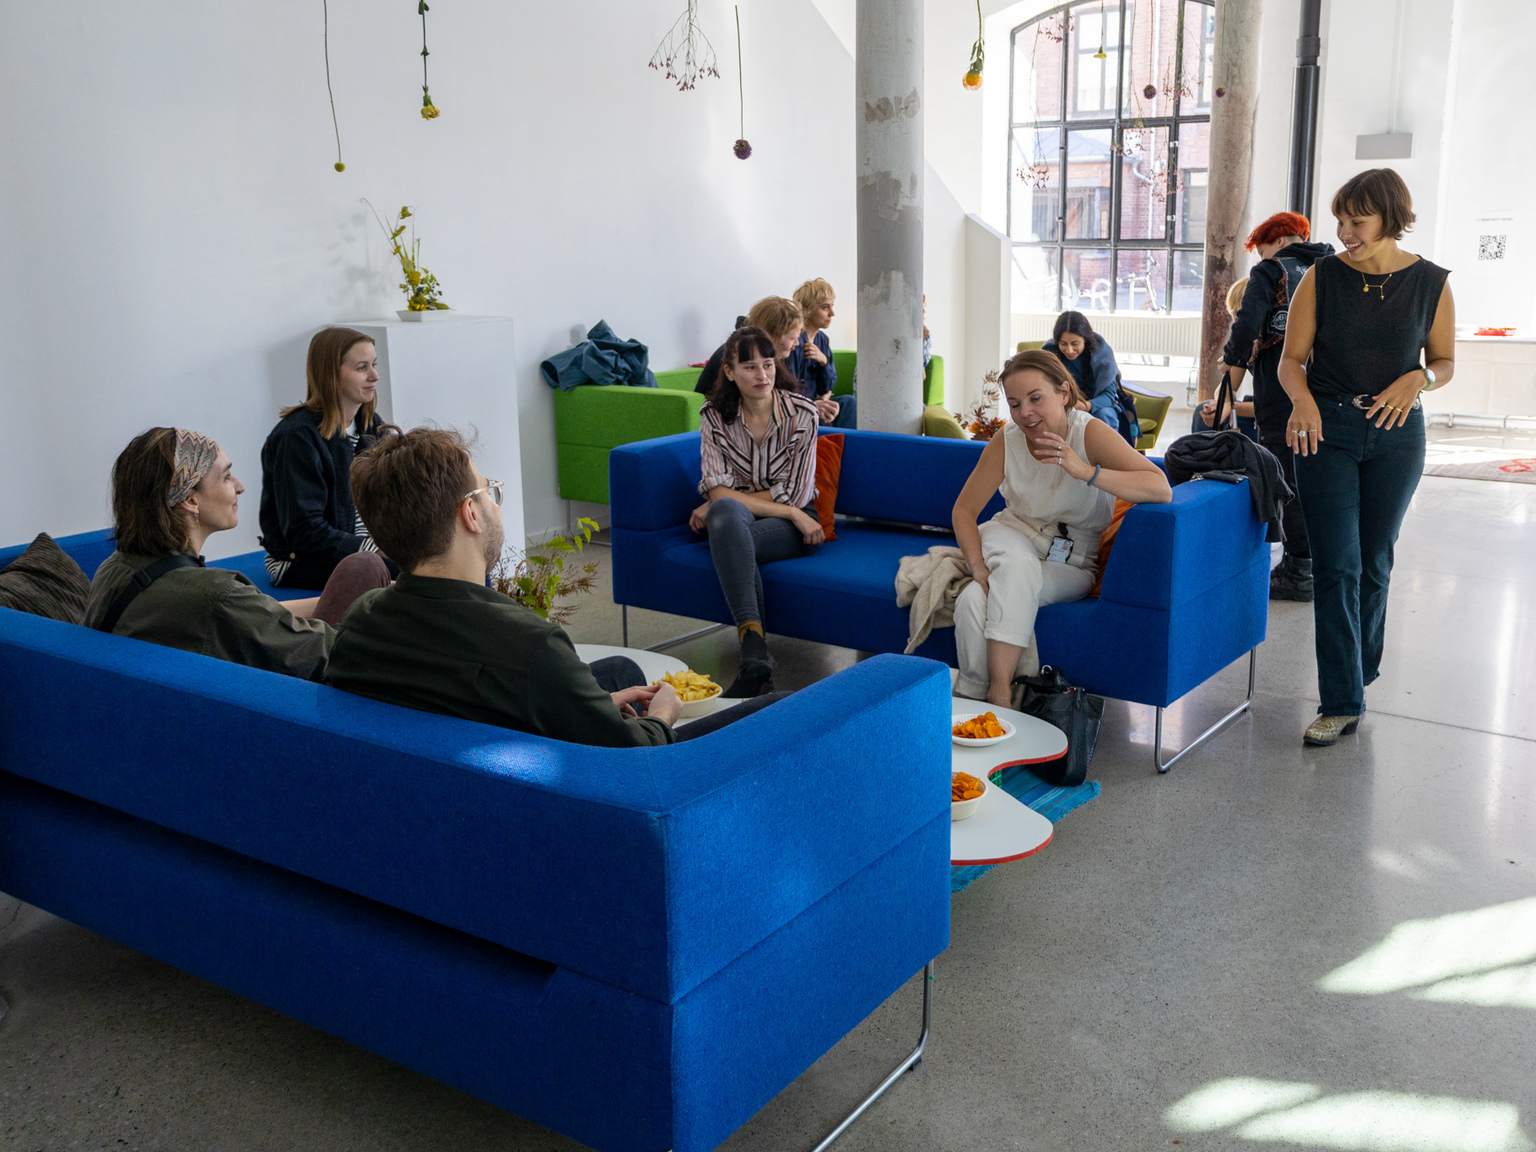 tudentene på interiørarkitektur og møbeldesign har jobba med prosjektet "The Livingroom". Formålet er å ha et sosialt sted hvor folk kan snakke sammen. Det er noe helt annet å snakke mens man sitter i en sofa enn ved skolebenken.